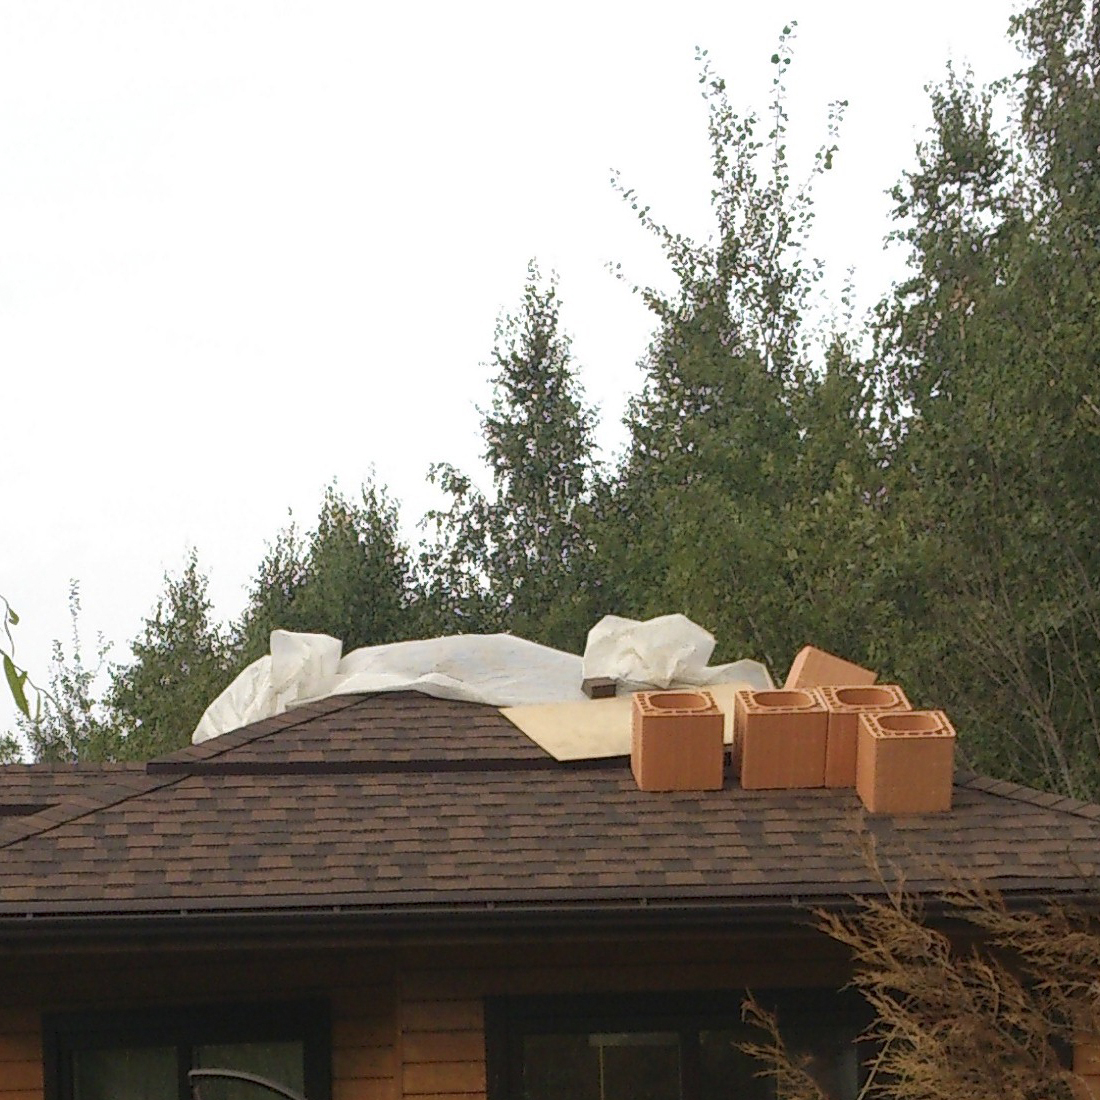 керамические дымоходы effe2 domus для барбекю, кирпичной печи, керамические блоки на крыше барбекю 